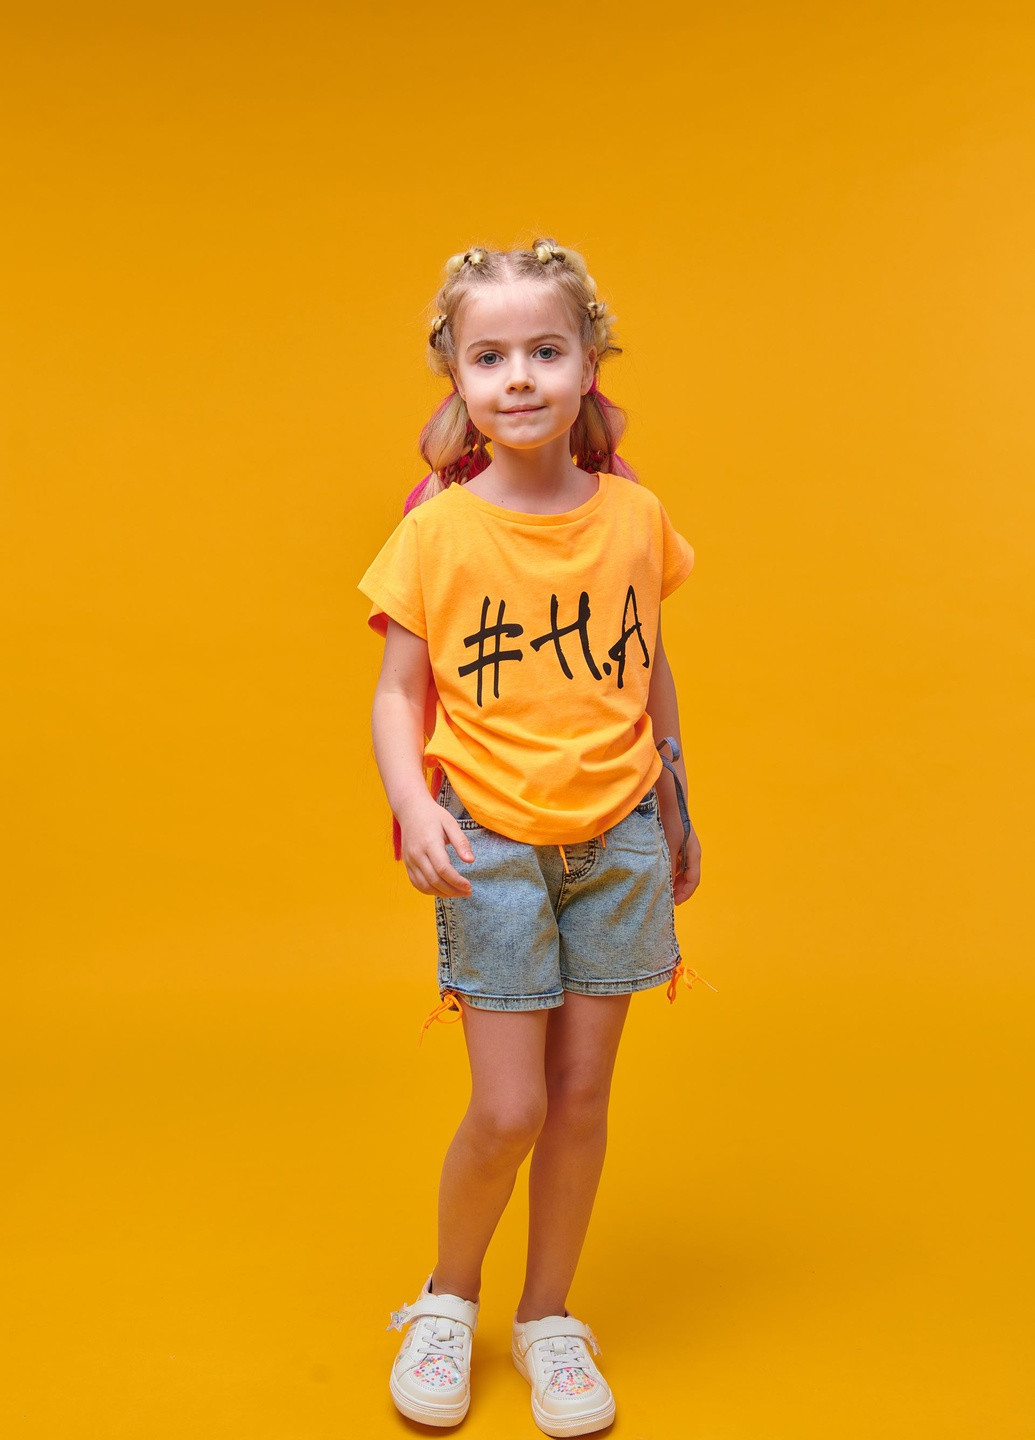 Помаранчева літня футболка помаранчева з принтом #ha Yumster